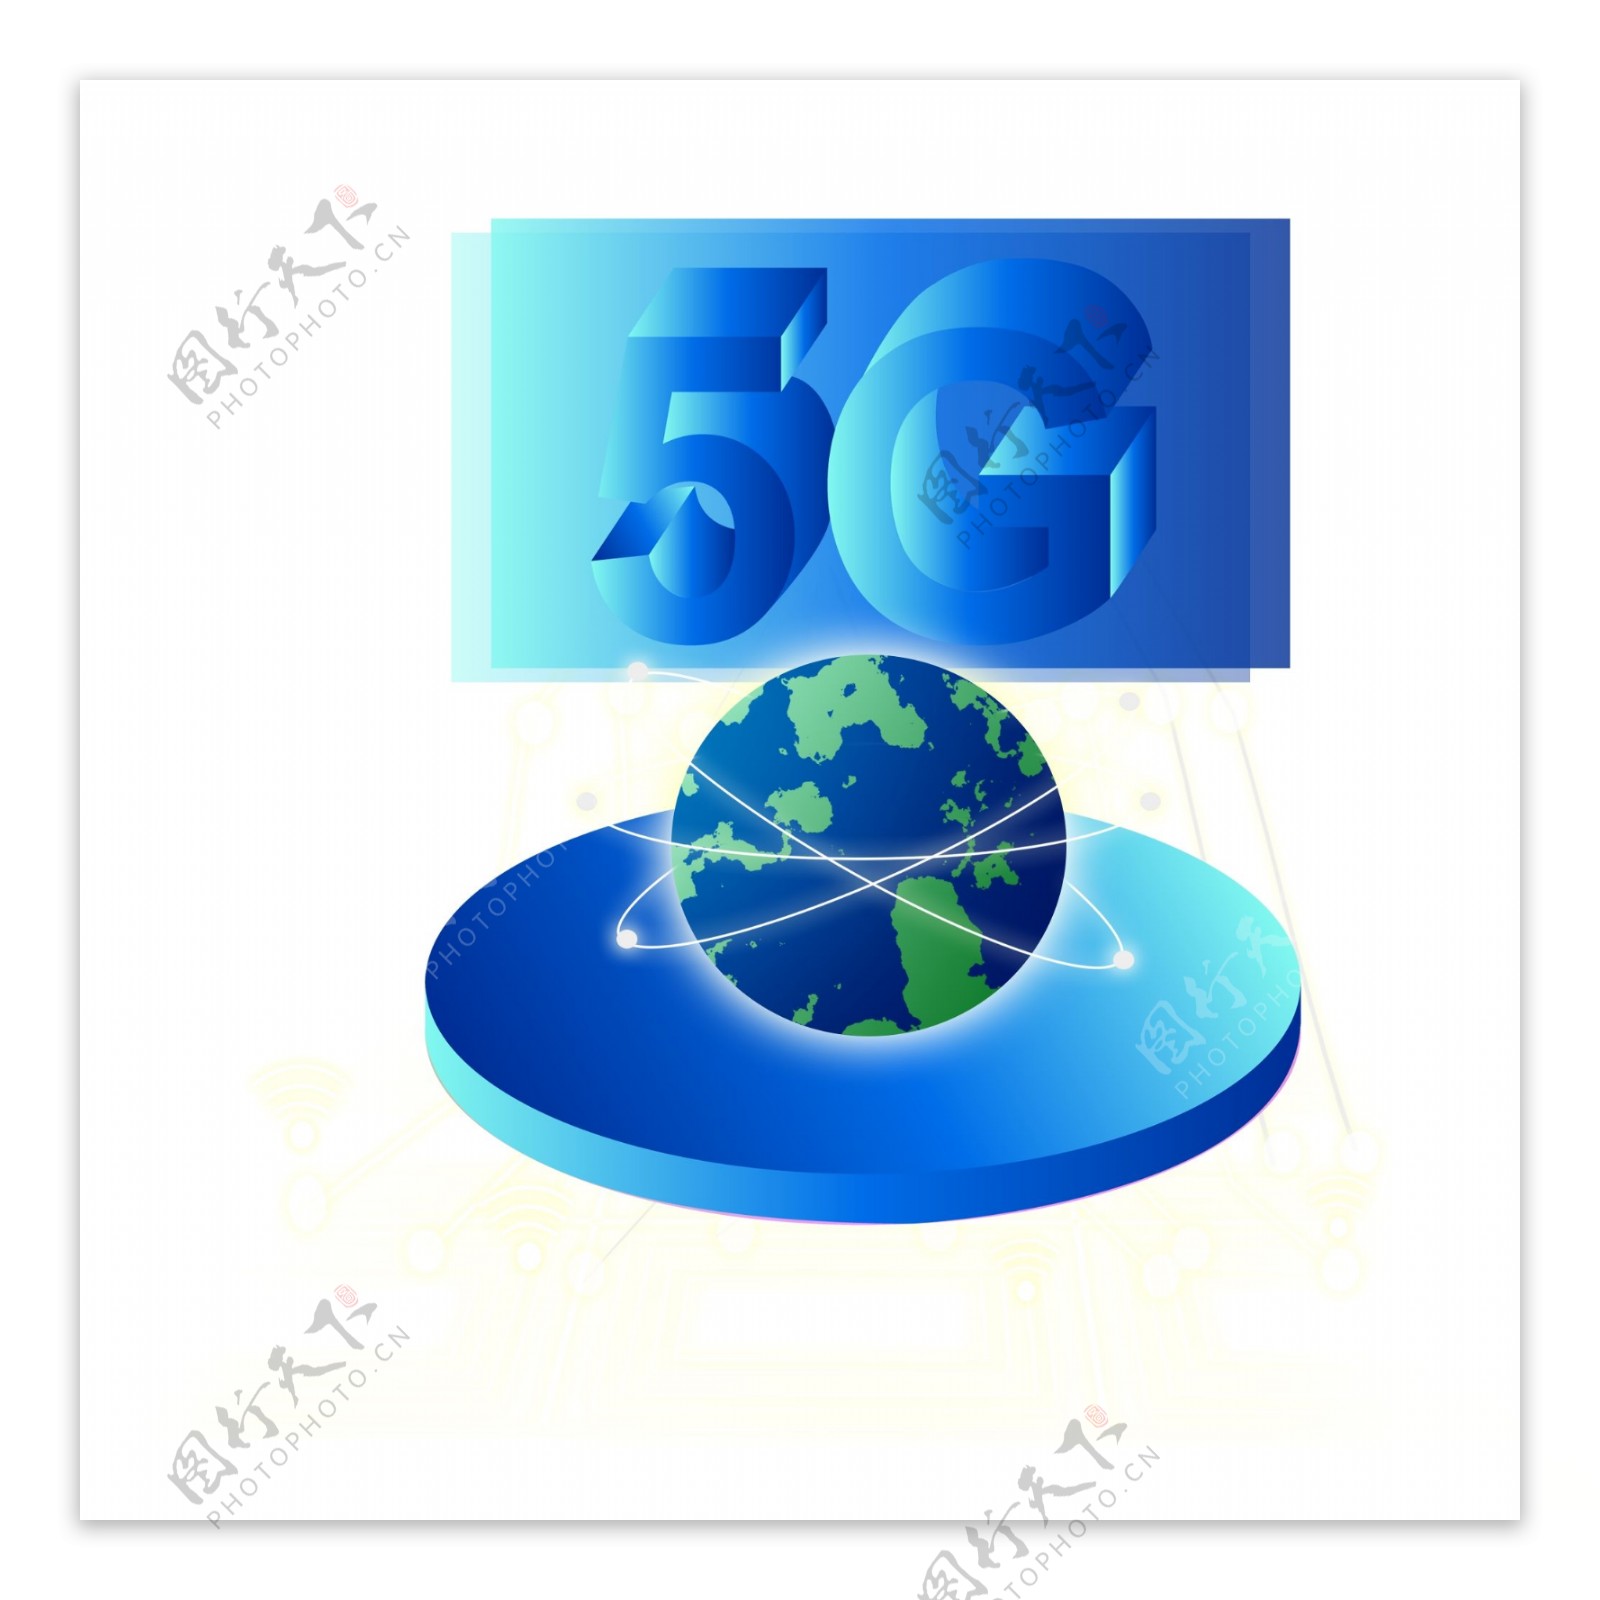 互联网5G时代地球